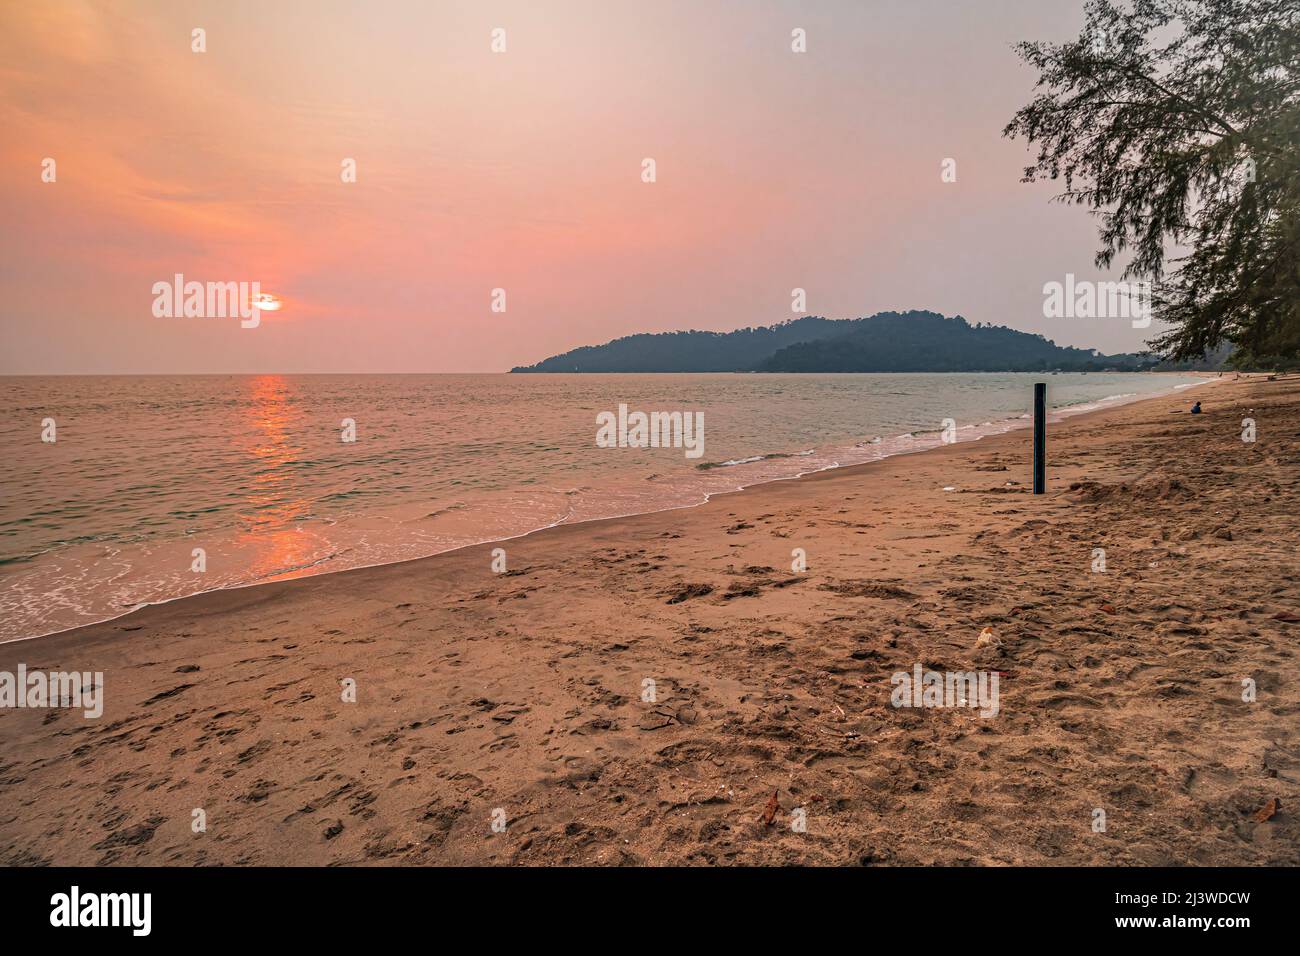 Sunset at Teluk Segari Beach in Lumut of Perak, Malaysia. Stock Photo